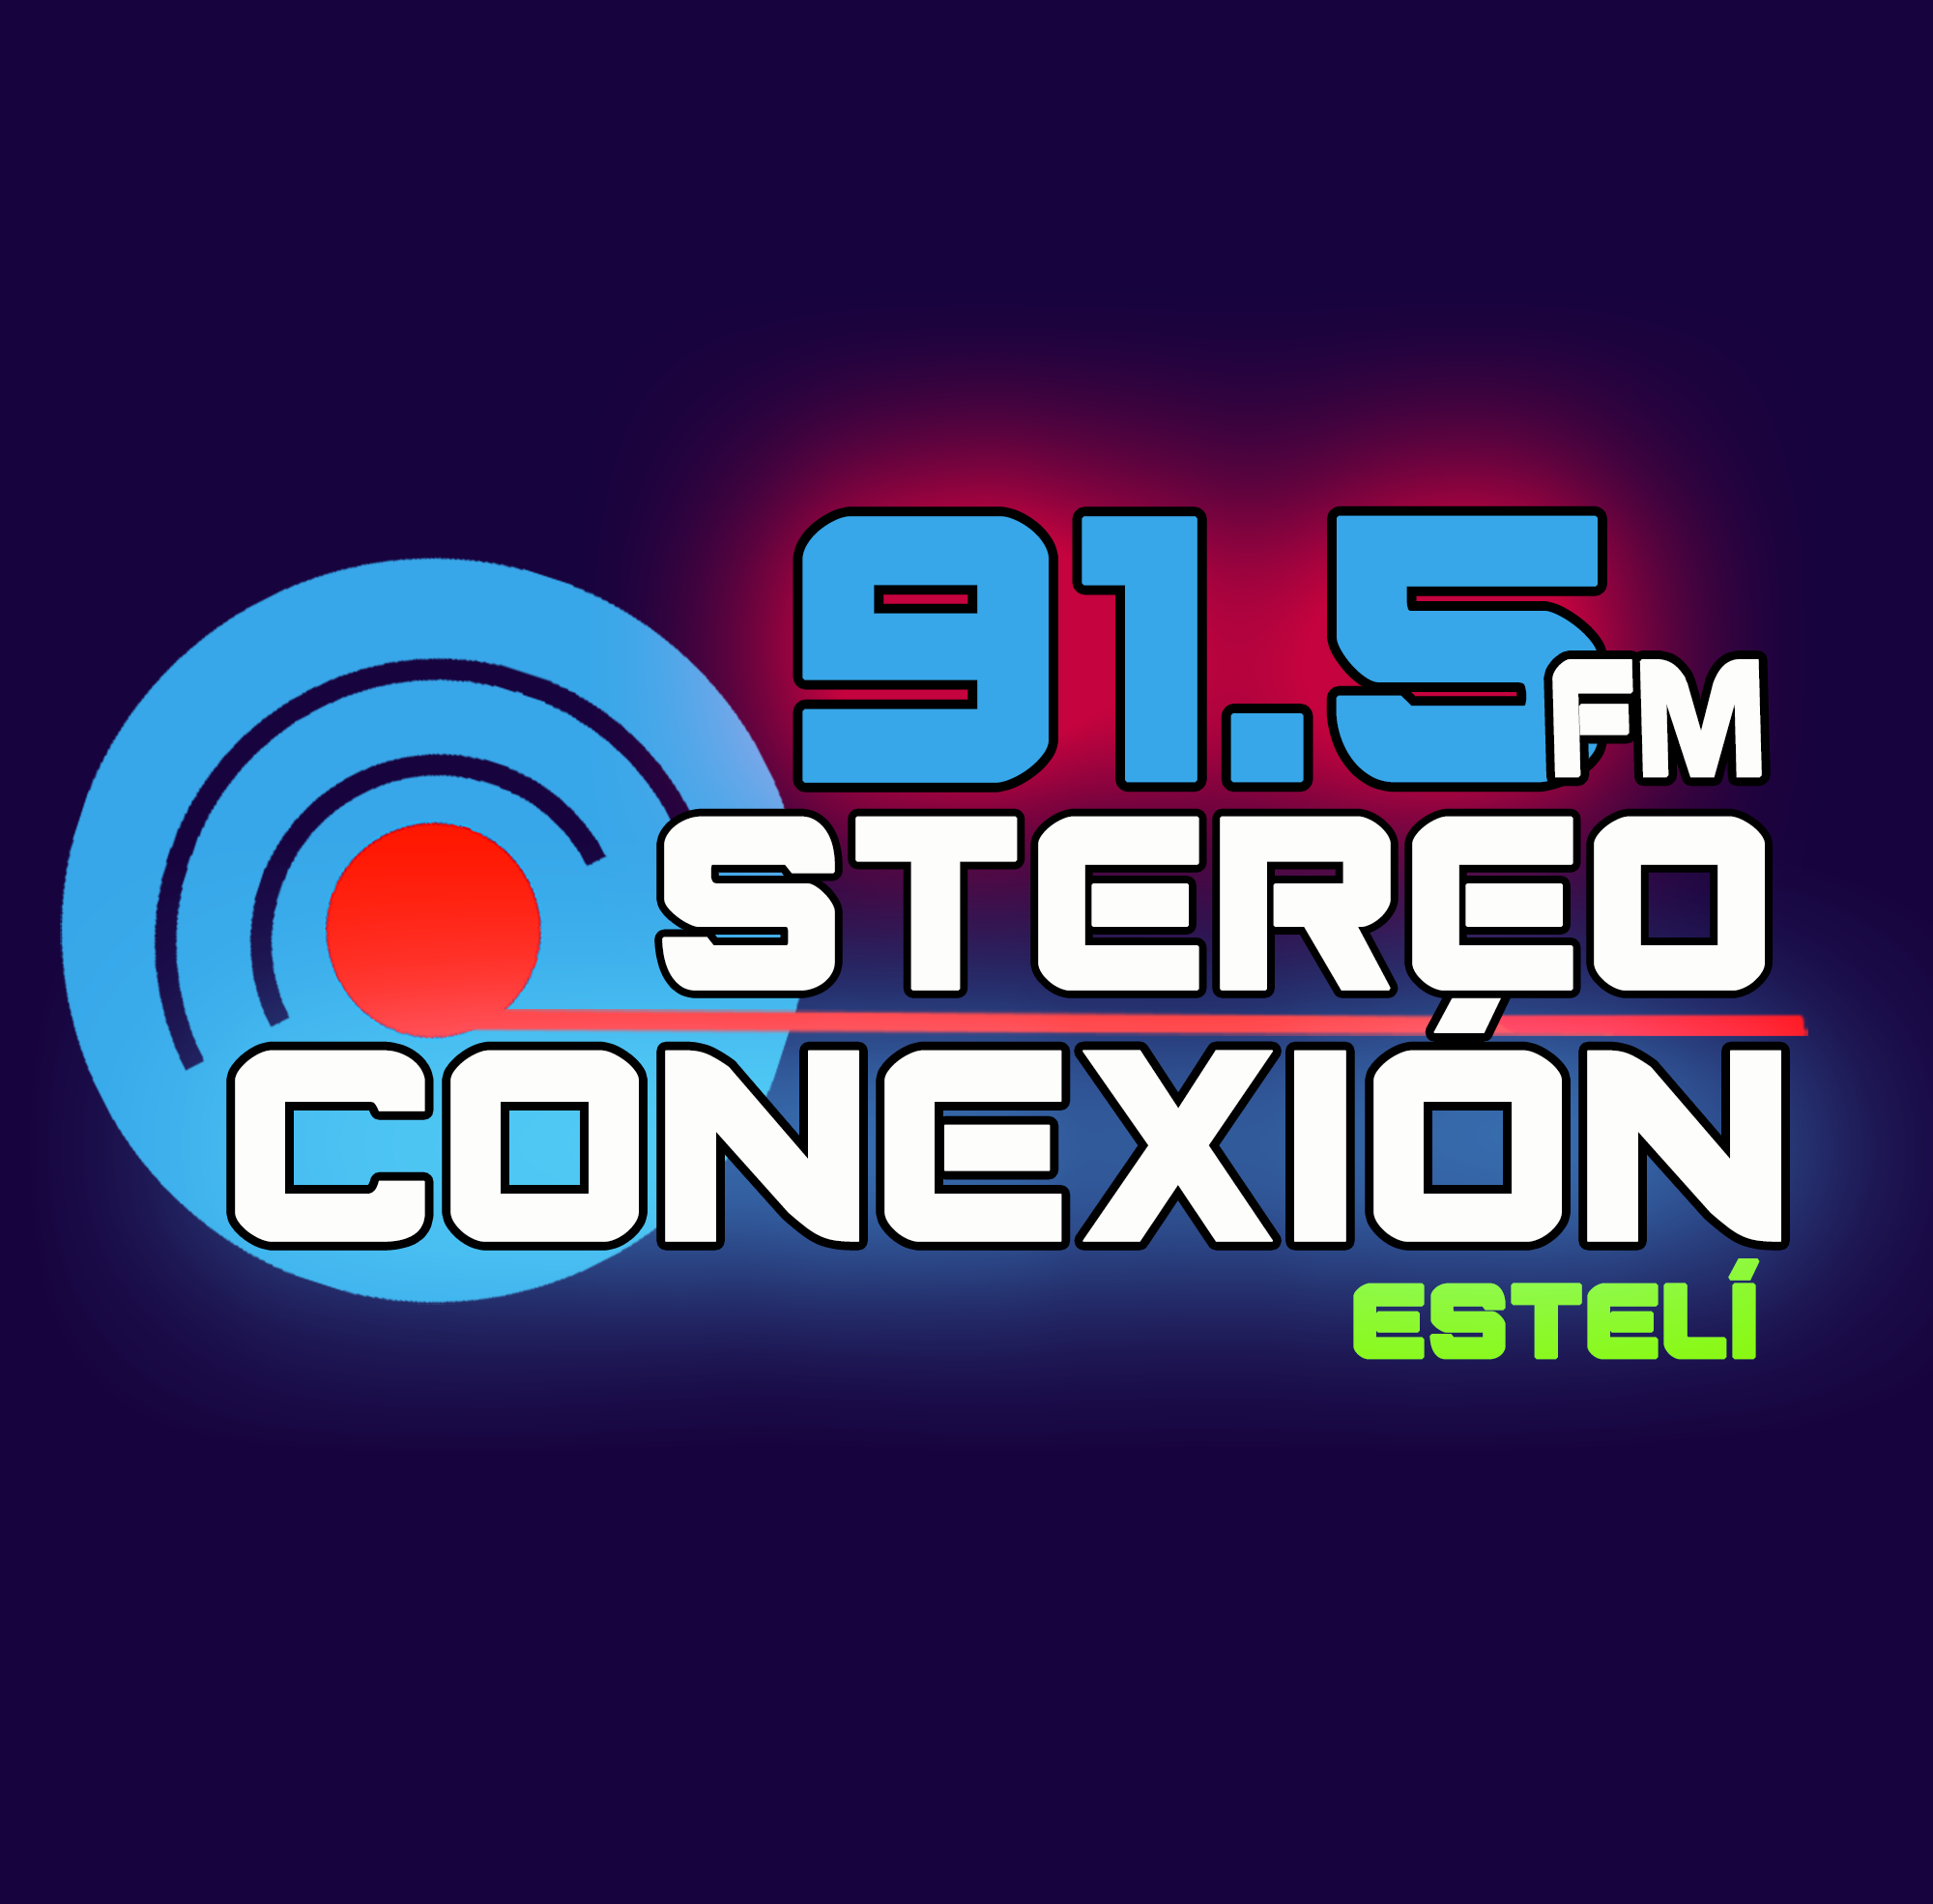 FM Stereo Conexión 91.5